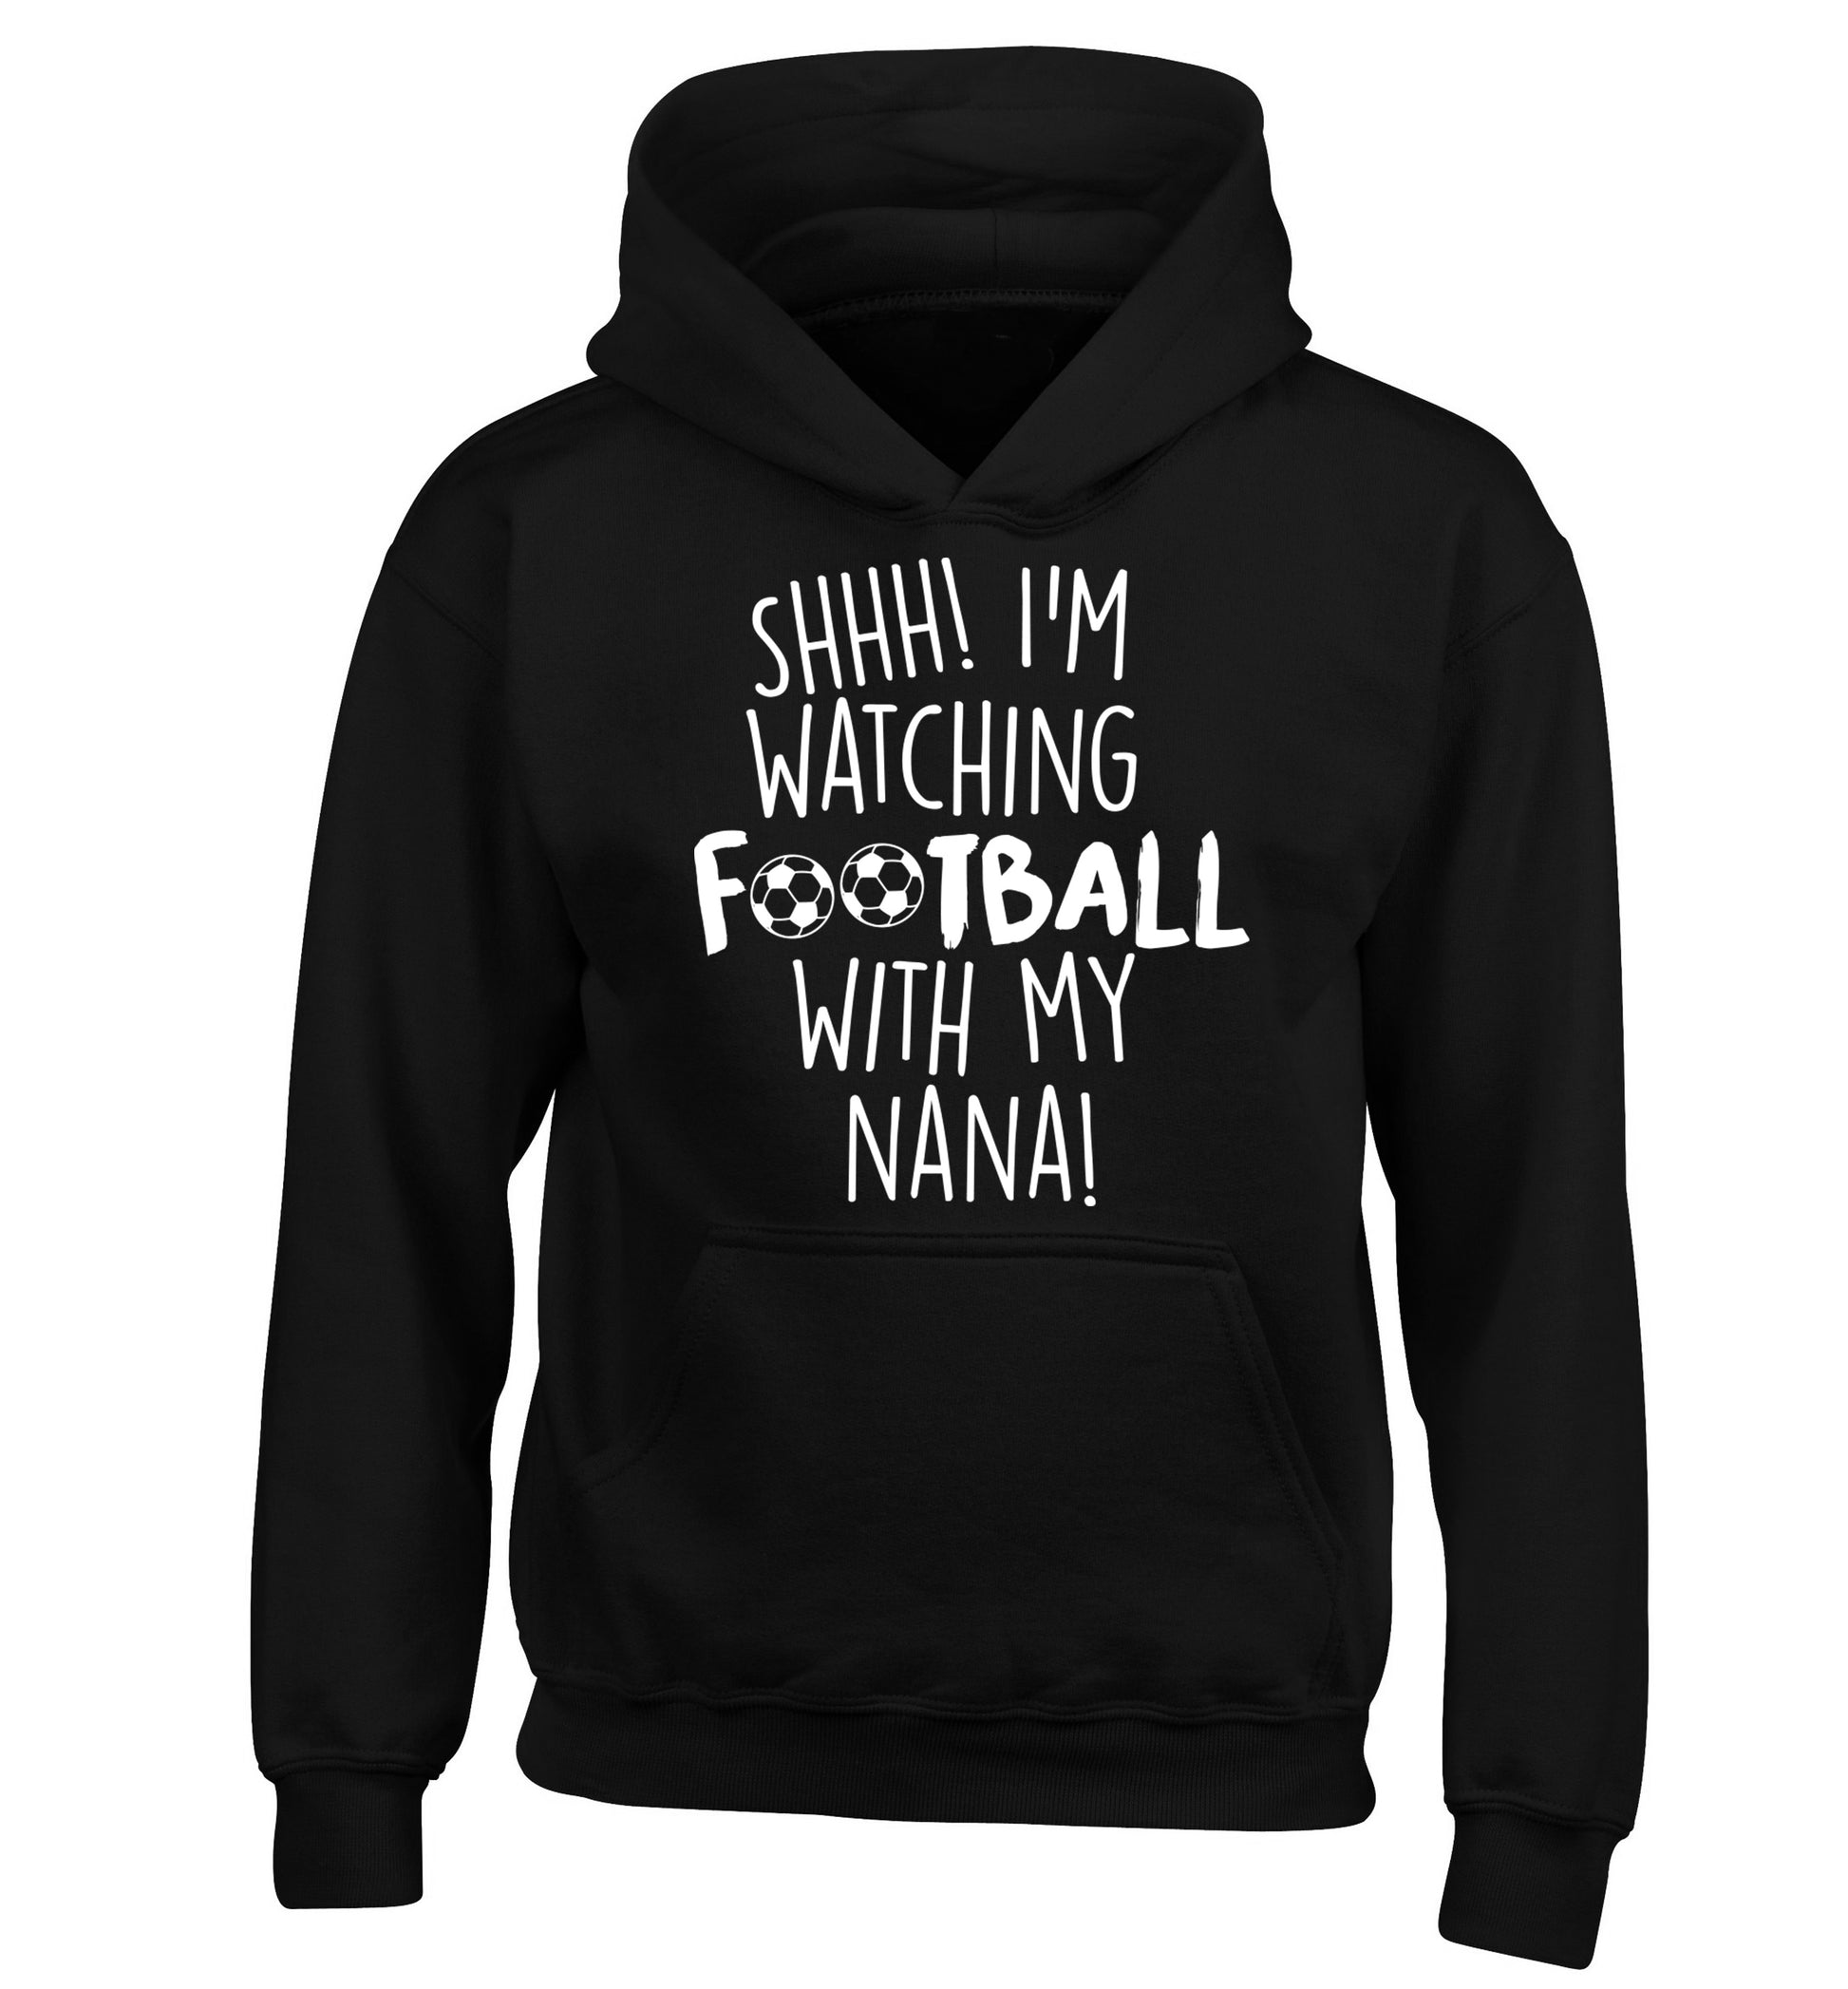 Shhh I'm watching football with my nana children's black hoodie 12-14 Years